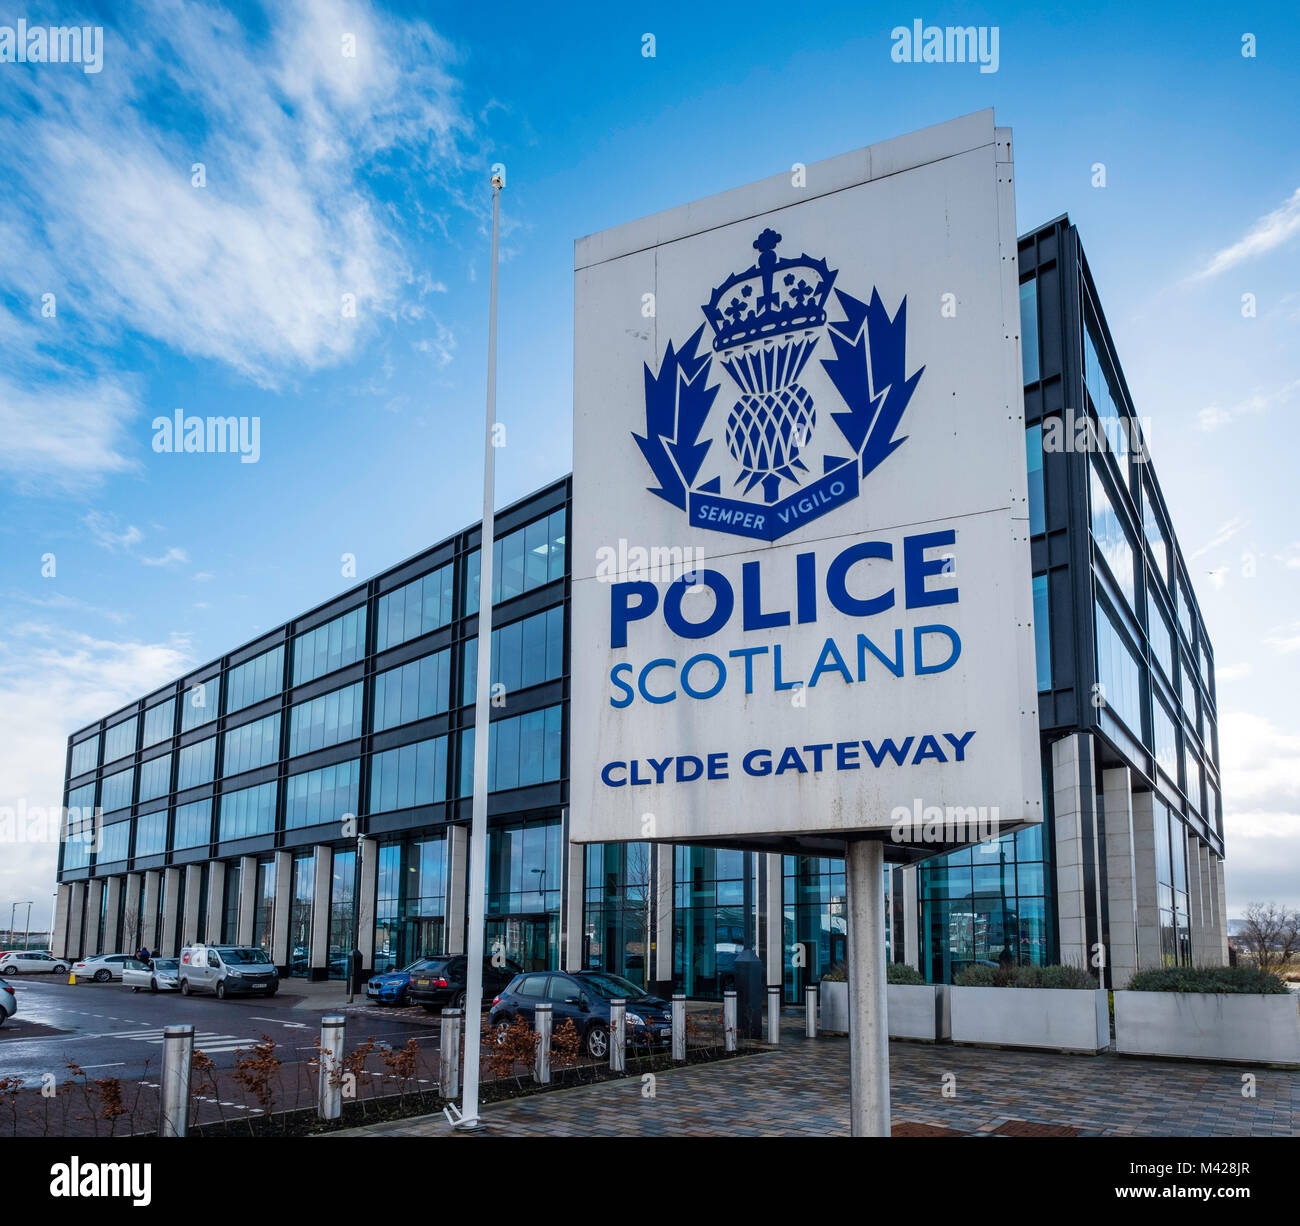 Anzeigen der Polizei Schottland Hauptsitz am Clyde Gateway in Glasgow, Schottland, Vereinigtes Königreich Stockfoto